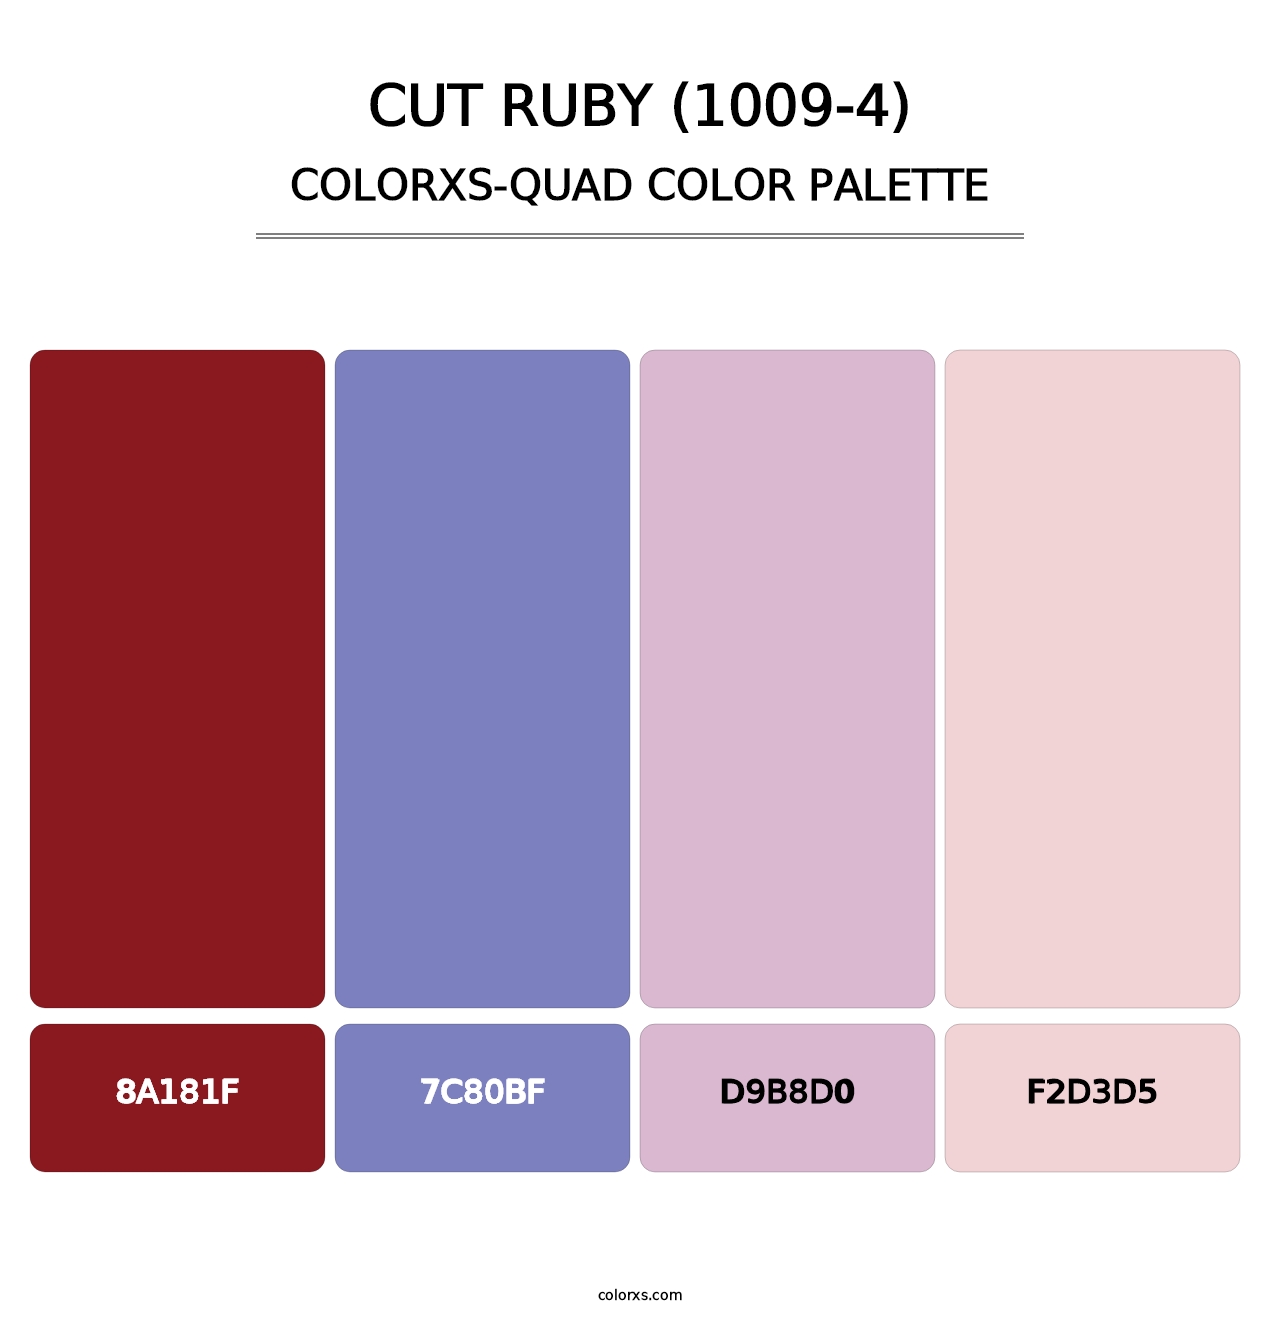 Cut Ruby (1009-4) - Colorxs Quad Palette